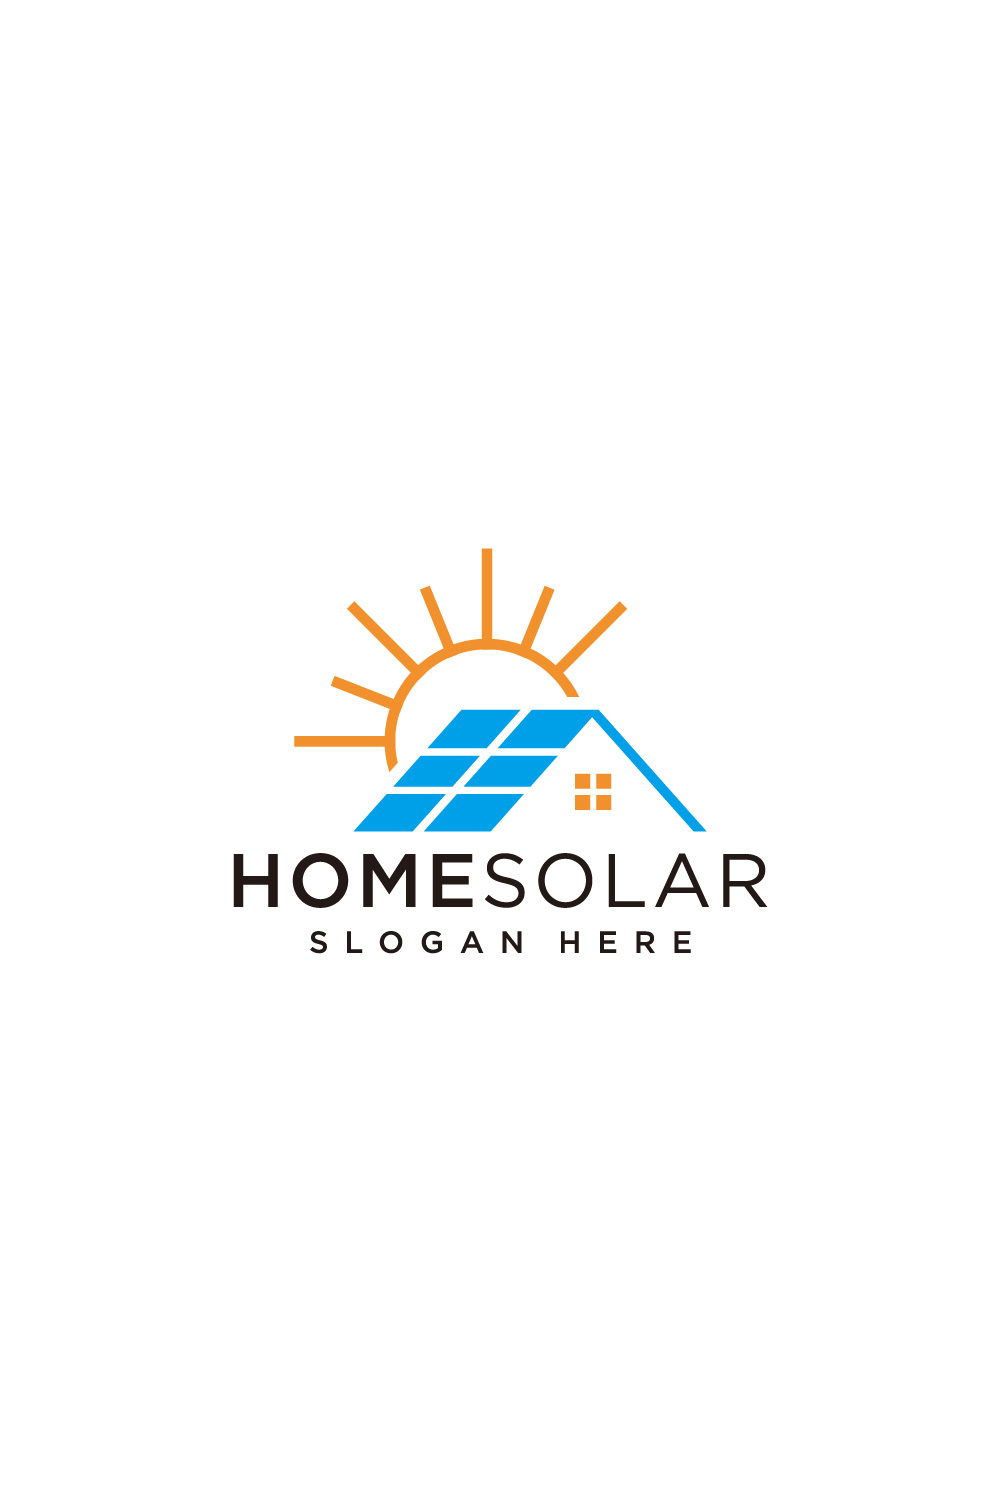 Apollo Solar - Solar Panel Installation Company in El Paso, TX